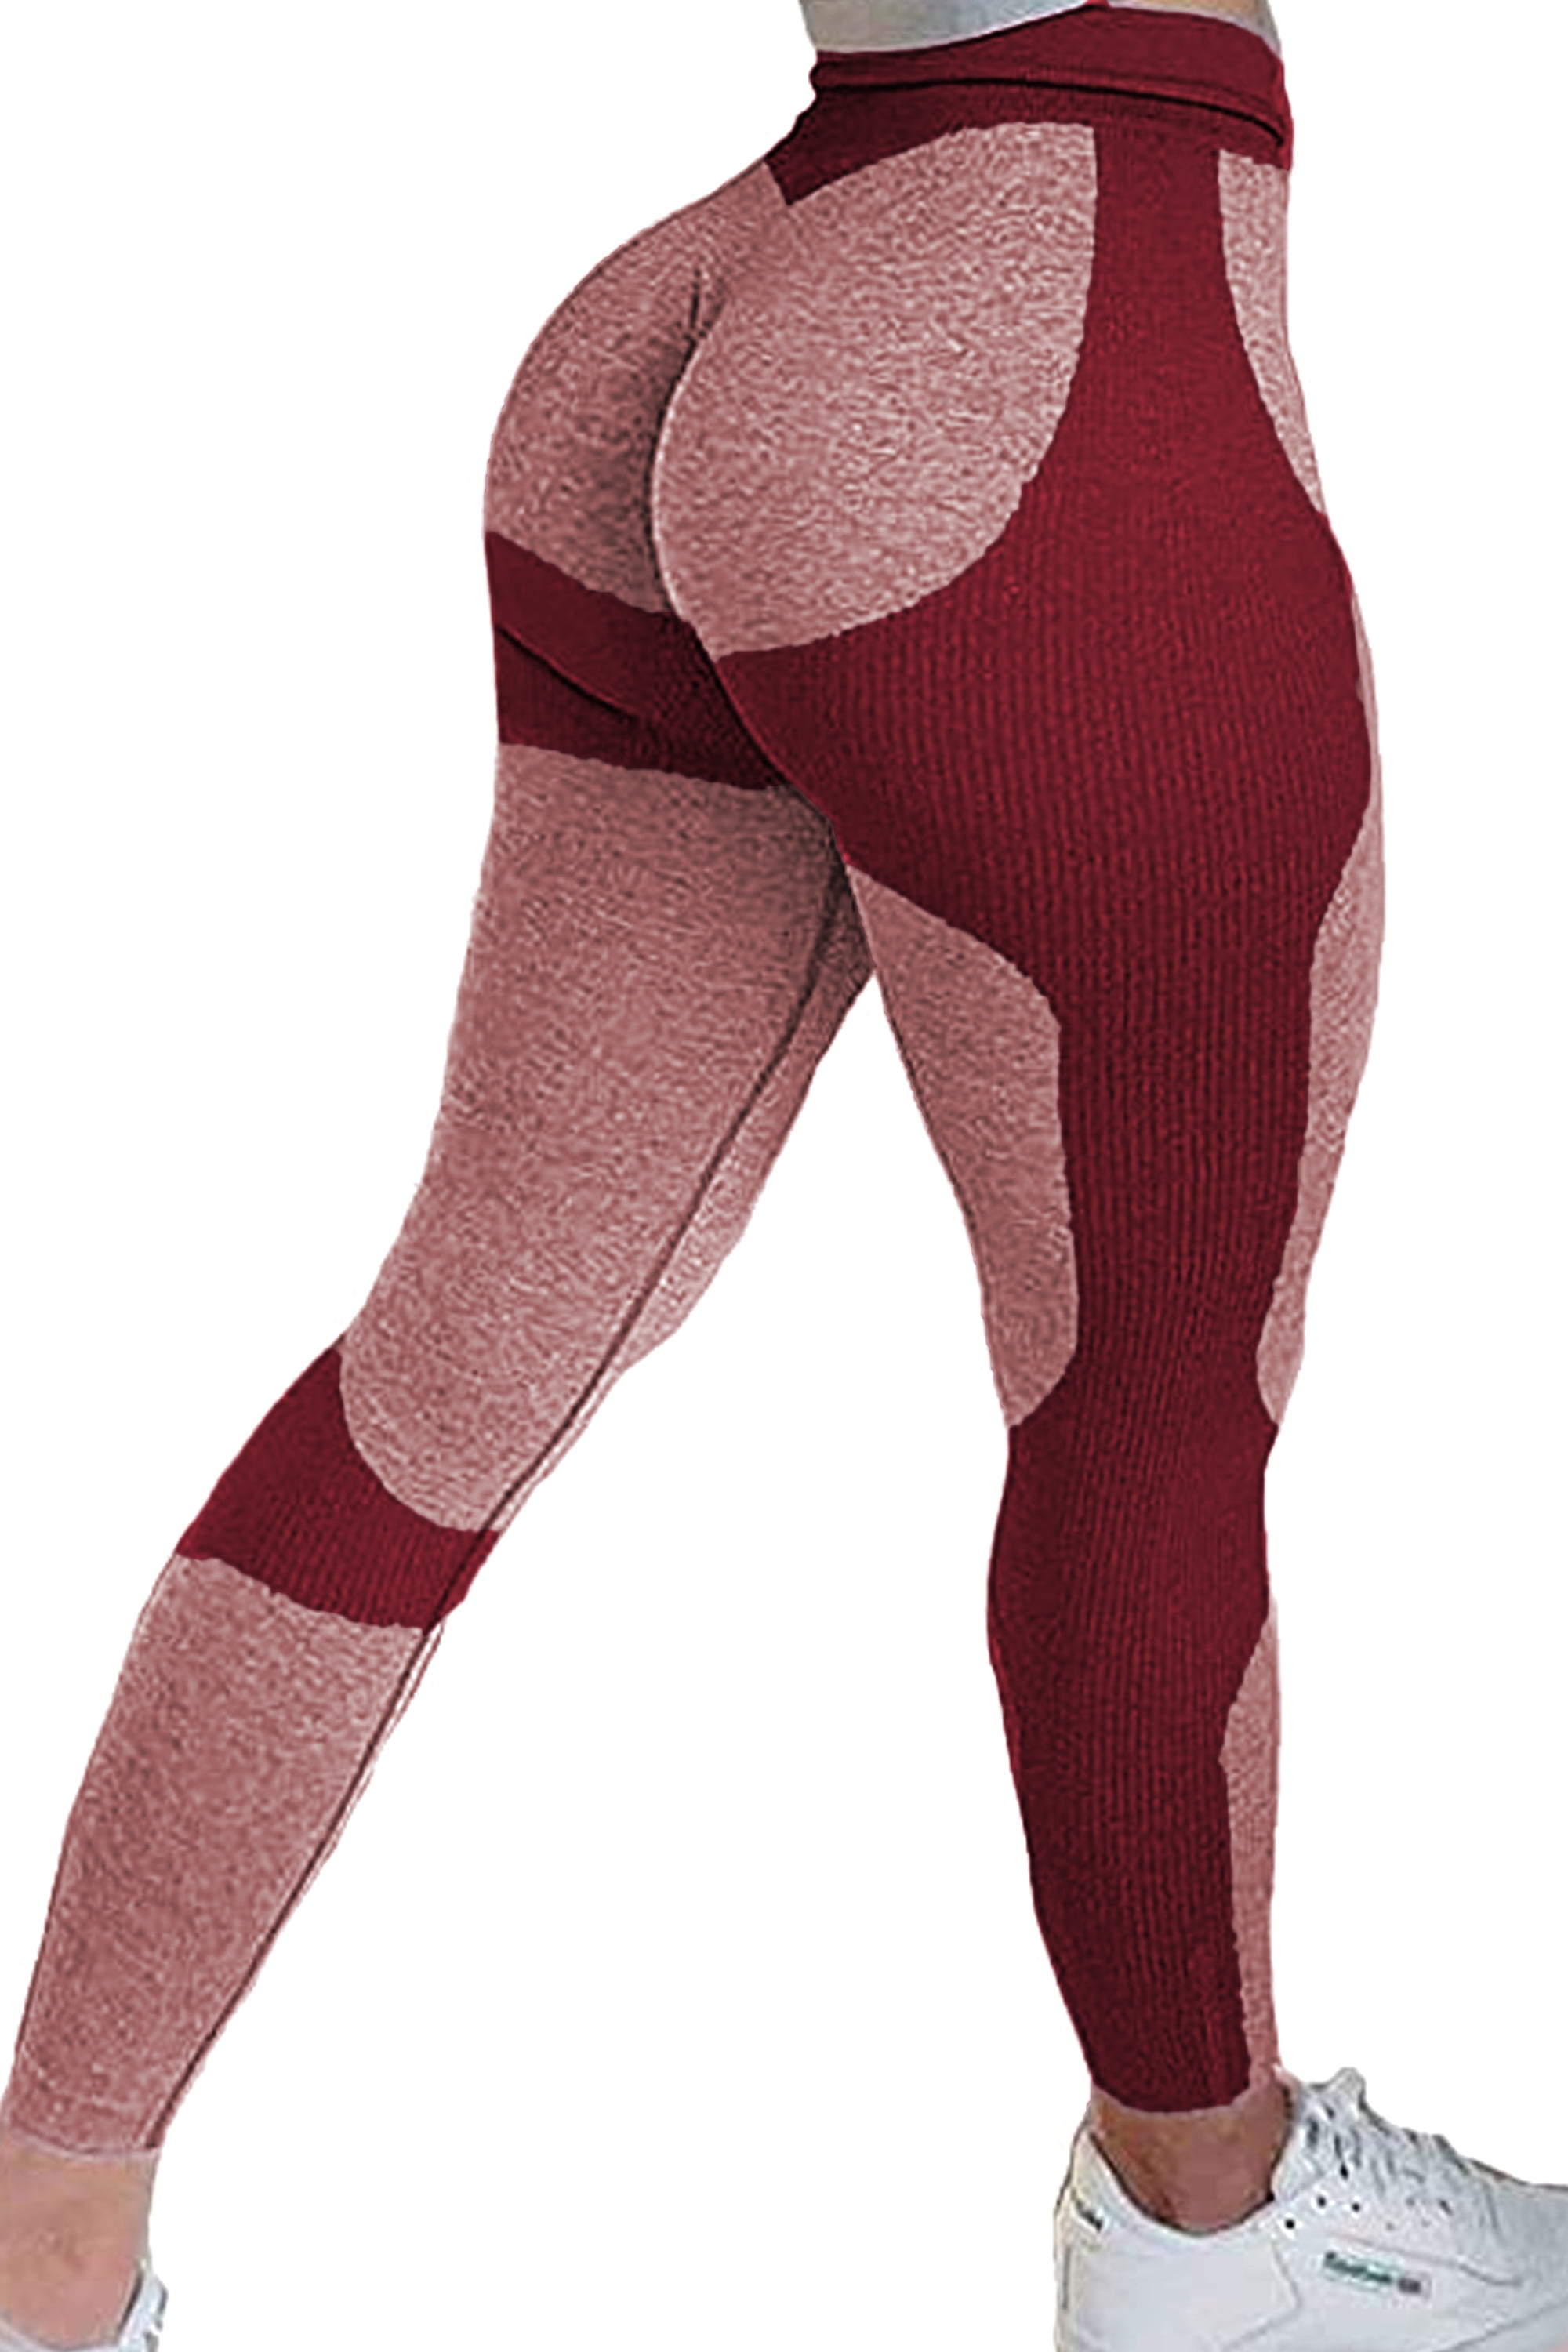 Women Seamless Leggings Yoga Pants High Waist Butt Lift Ombre Workout Trousers A 